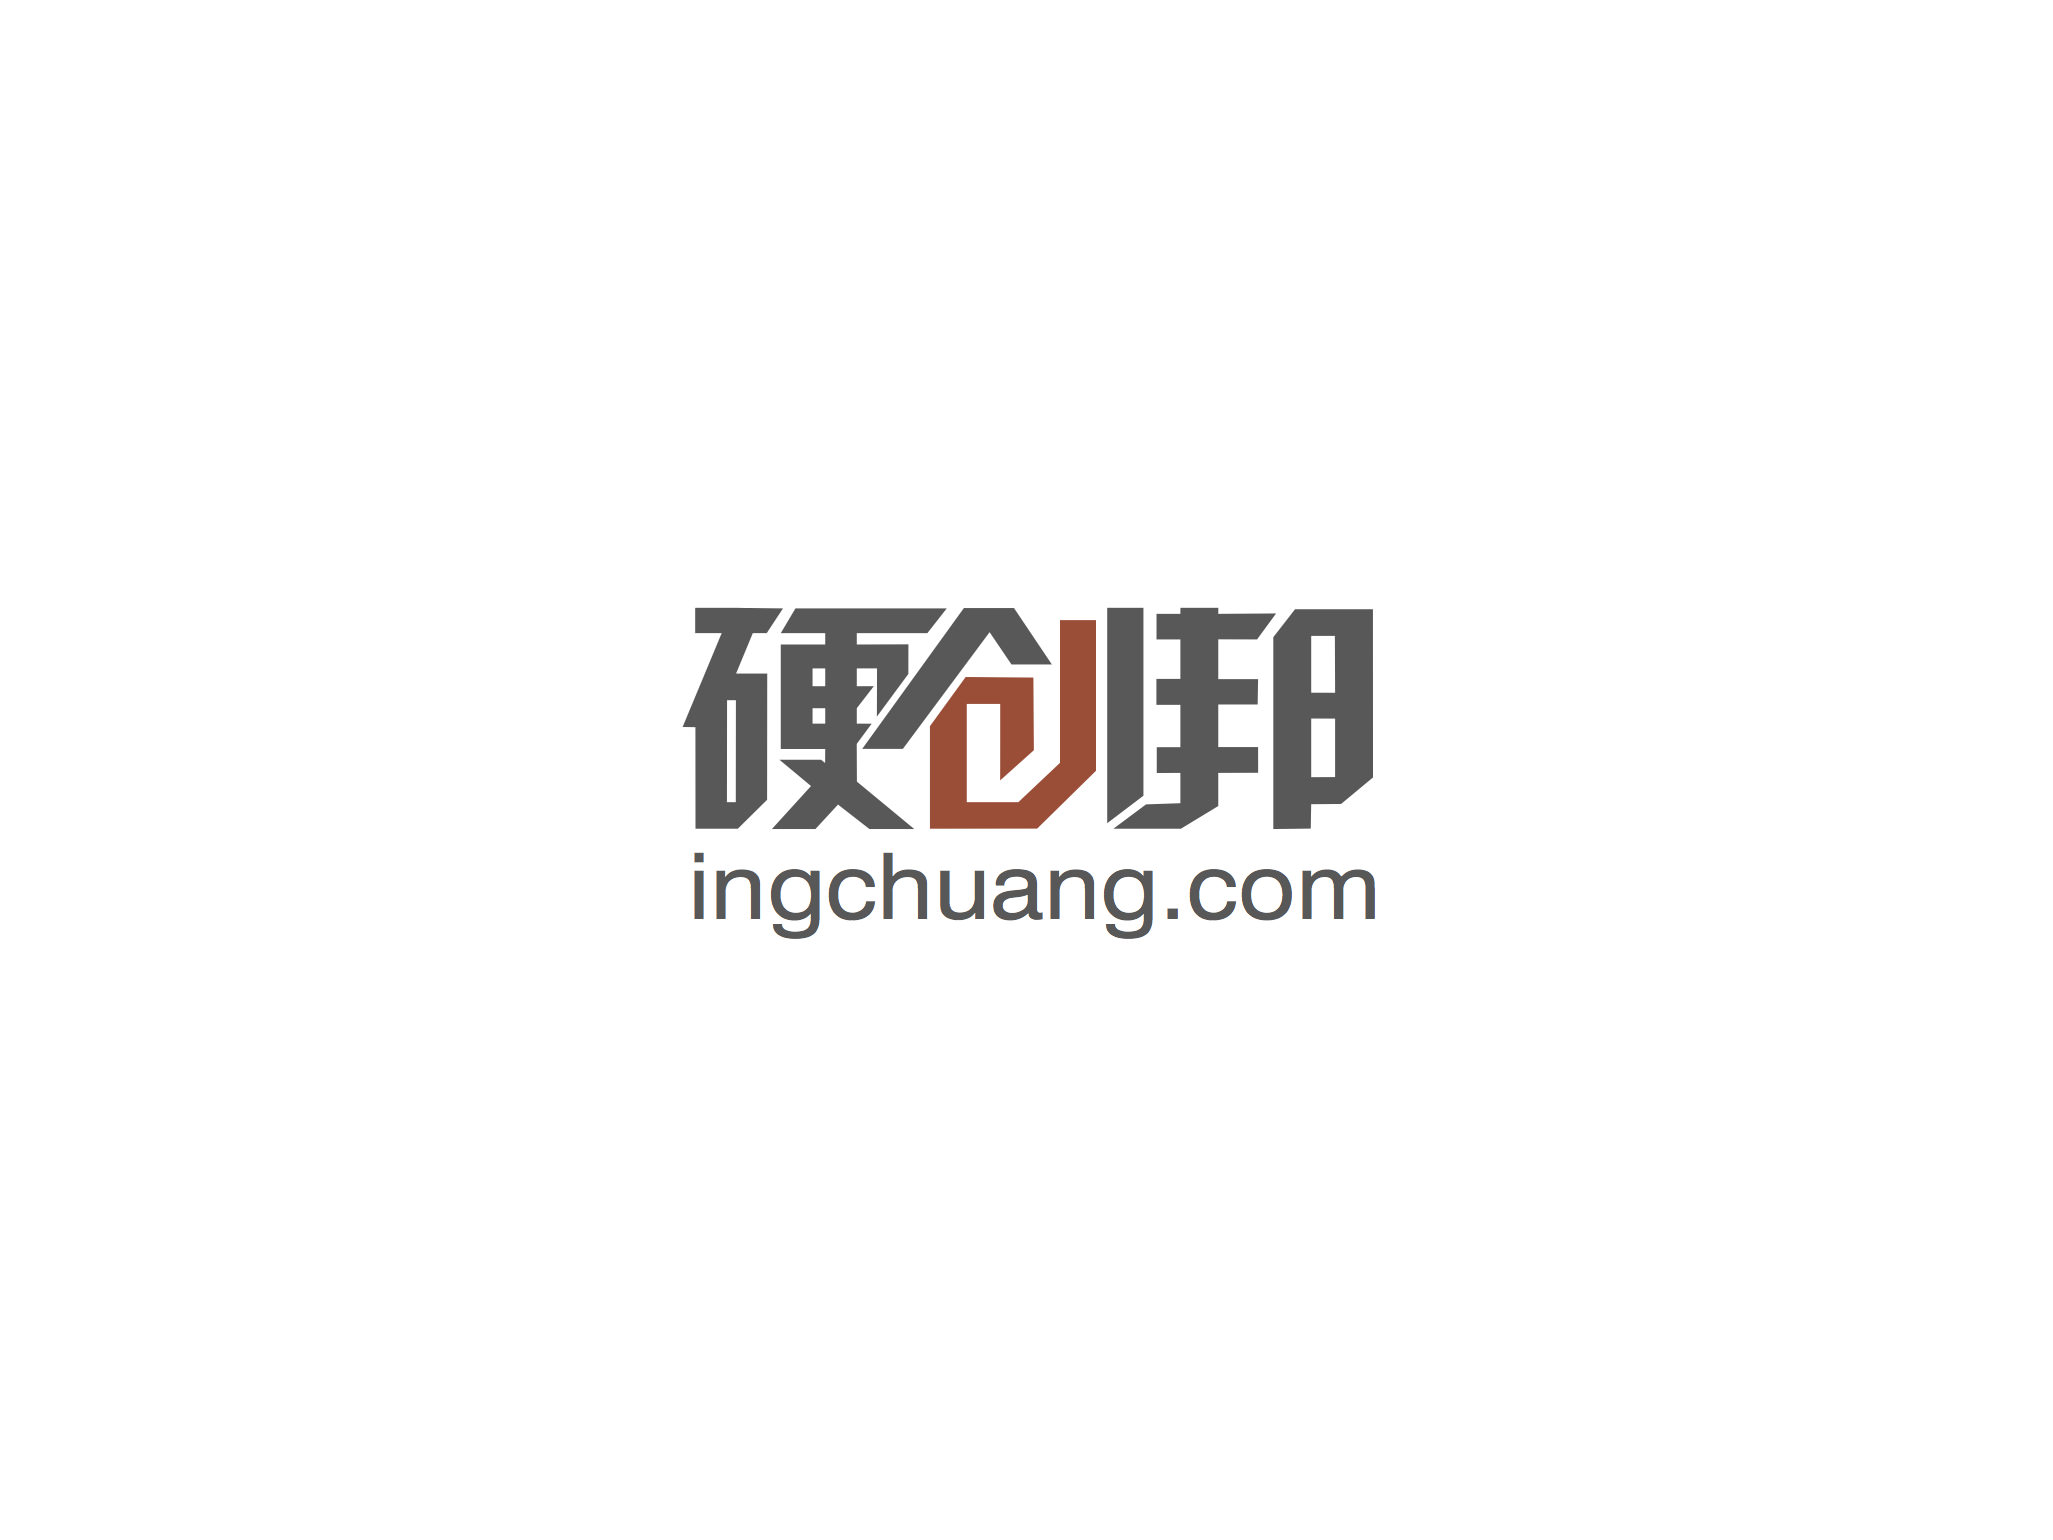 ingchuang